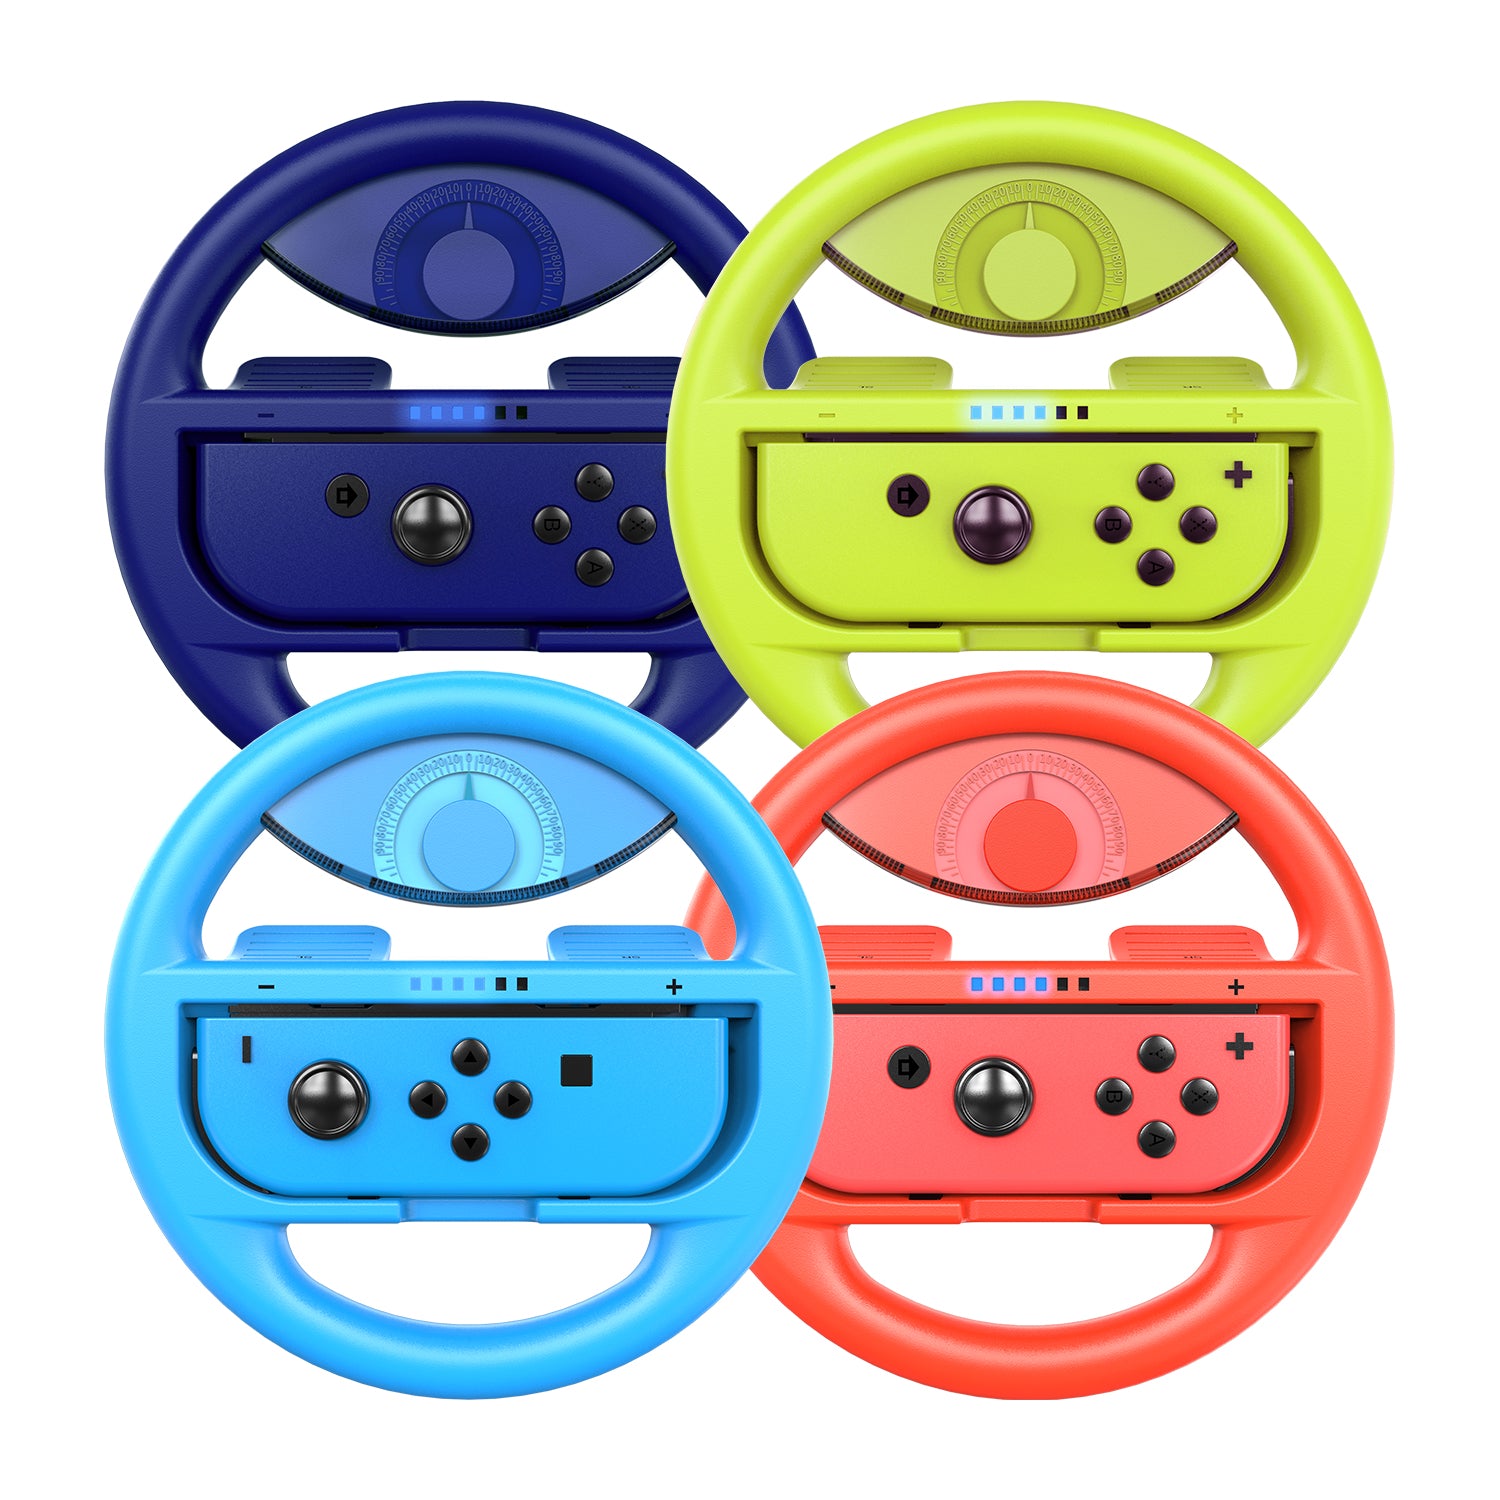 Basics Lenkrad für Nintendo Switch Blau und Rot Konsole Zubehör